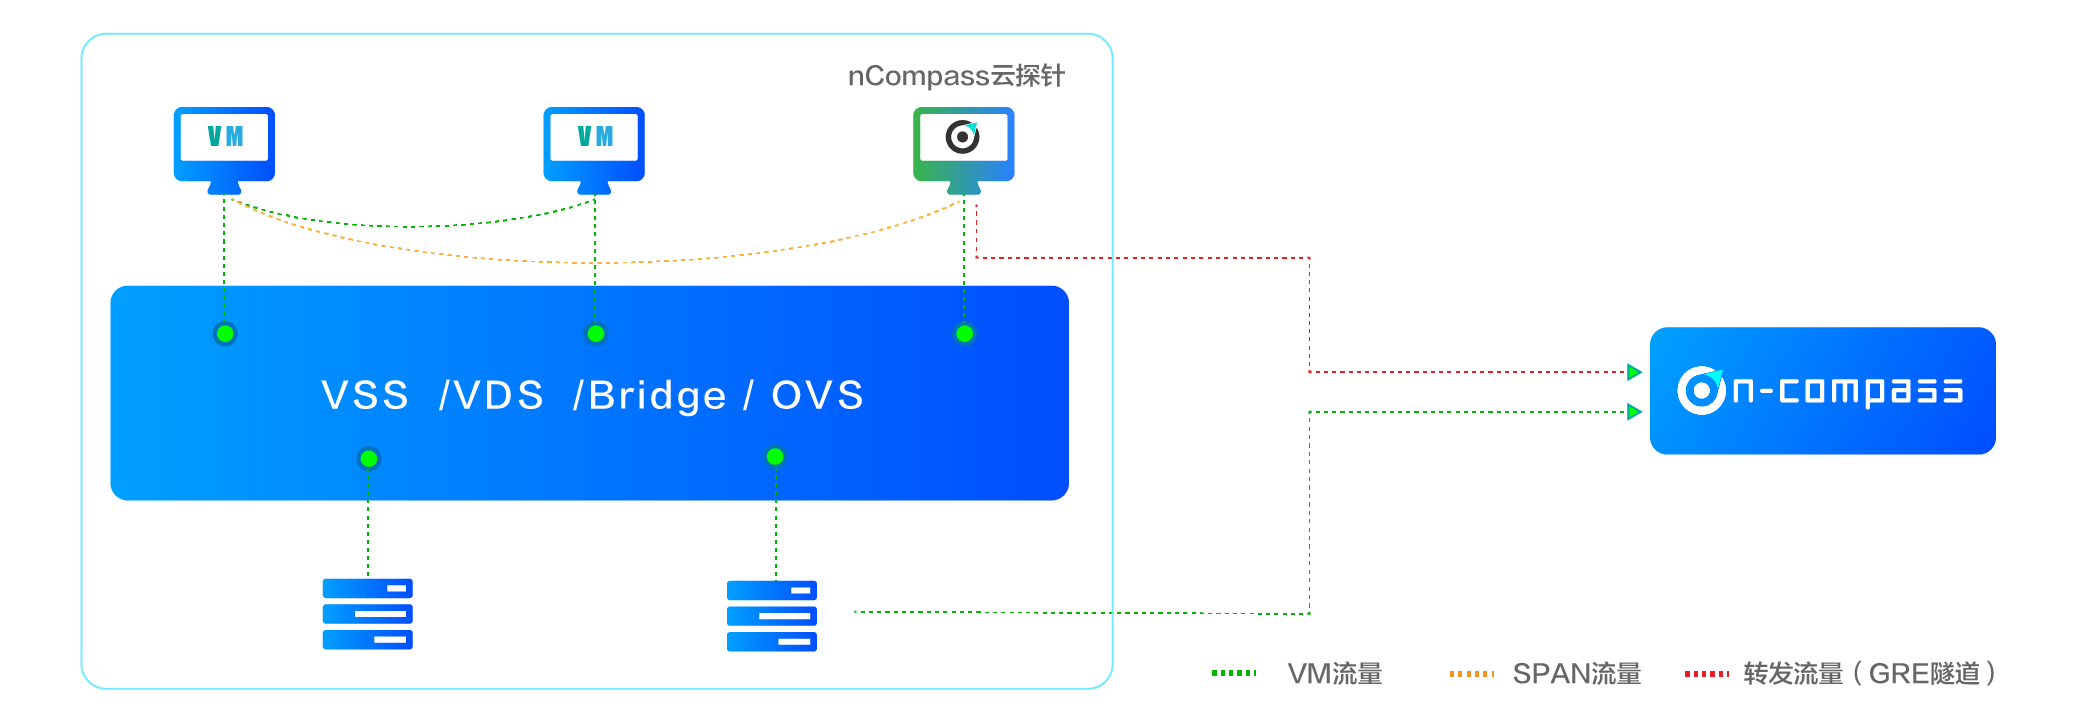 Bonree NPM可部署在用户的共有云或私有云环境 ，不论是腾讯 、阿里和华为的公有云ECS环境 ，还是VMware 、KVM等私有云环境 ，均可通过在宿主机中部署Reesii云探针 ，以VM或Agent的方式 ，采集虚拟交换机采集流量数据 ，用于感知及分析虚拟化网络 、组件 、VM的异常性能事件 。